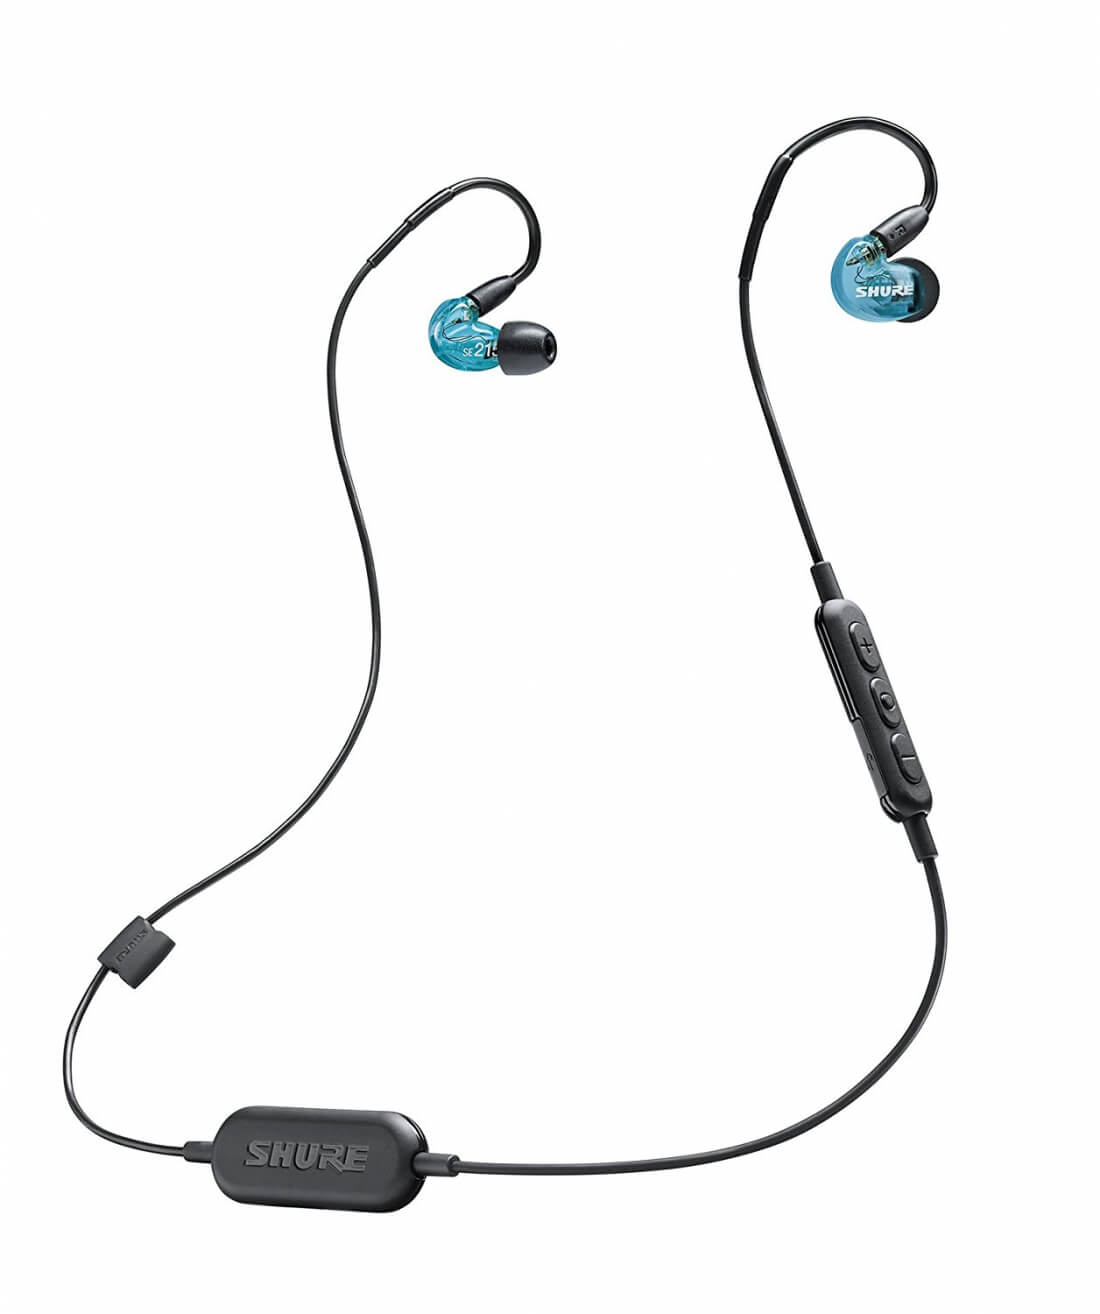 Shure SE215 Wireless In-Ear Headphones